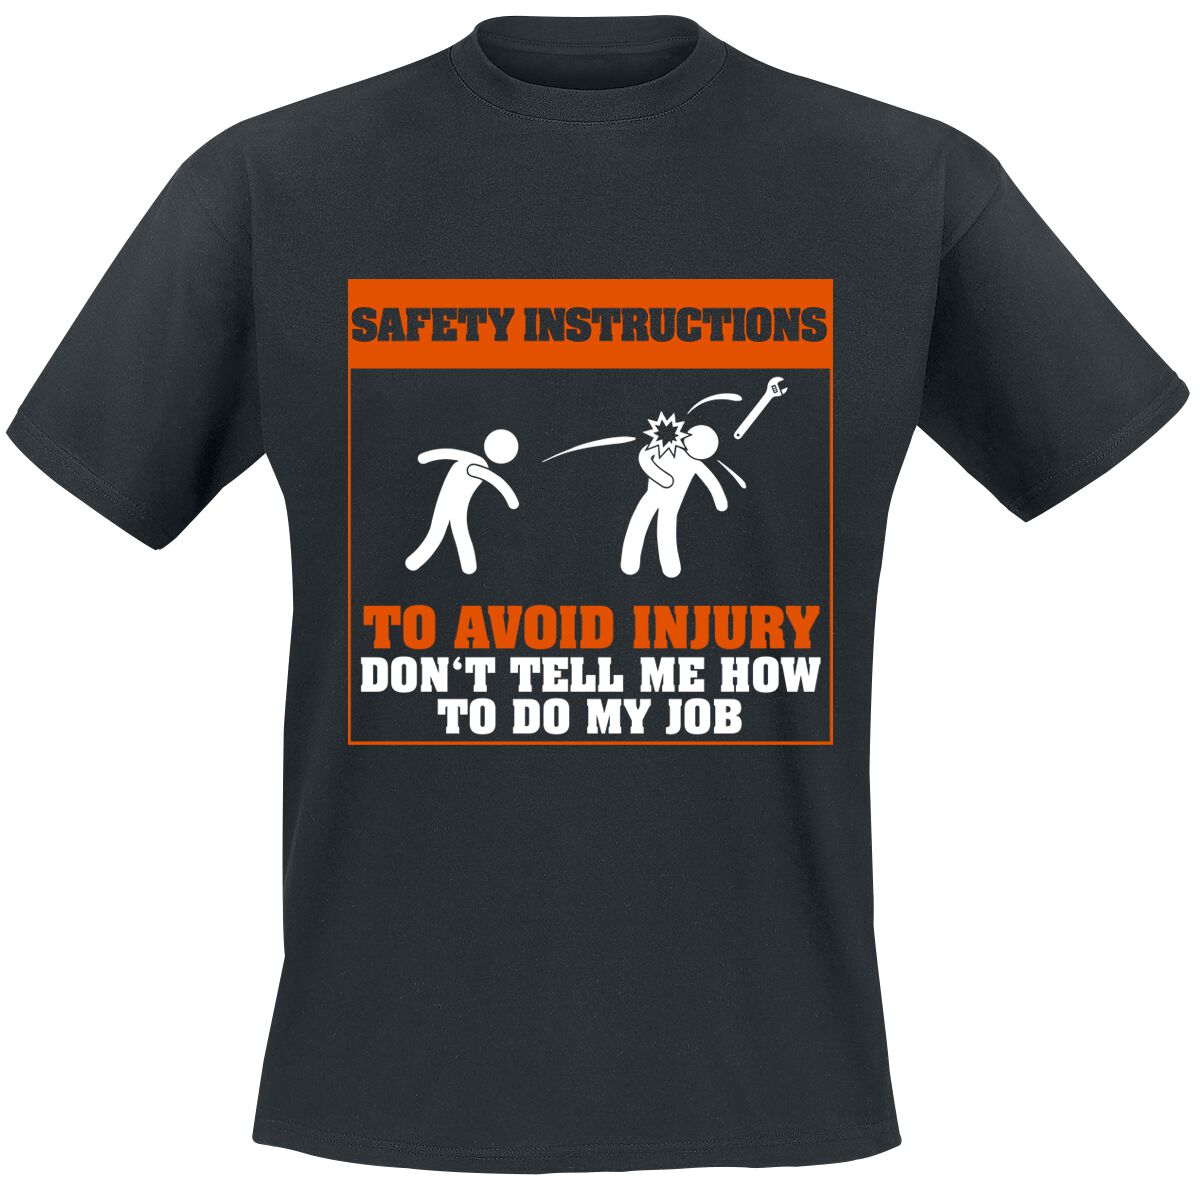 Beruf & Karriere T-Shirt - Safety Instructions - S bis 5XL - für Männer - Größe S - schwarz